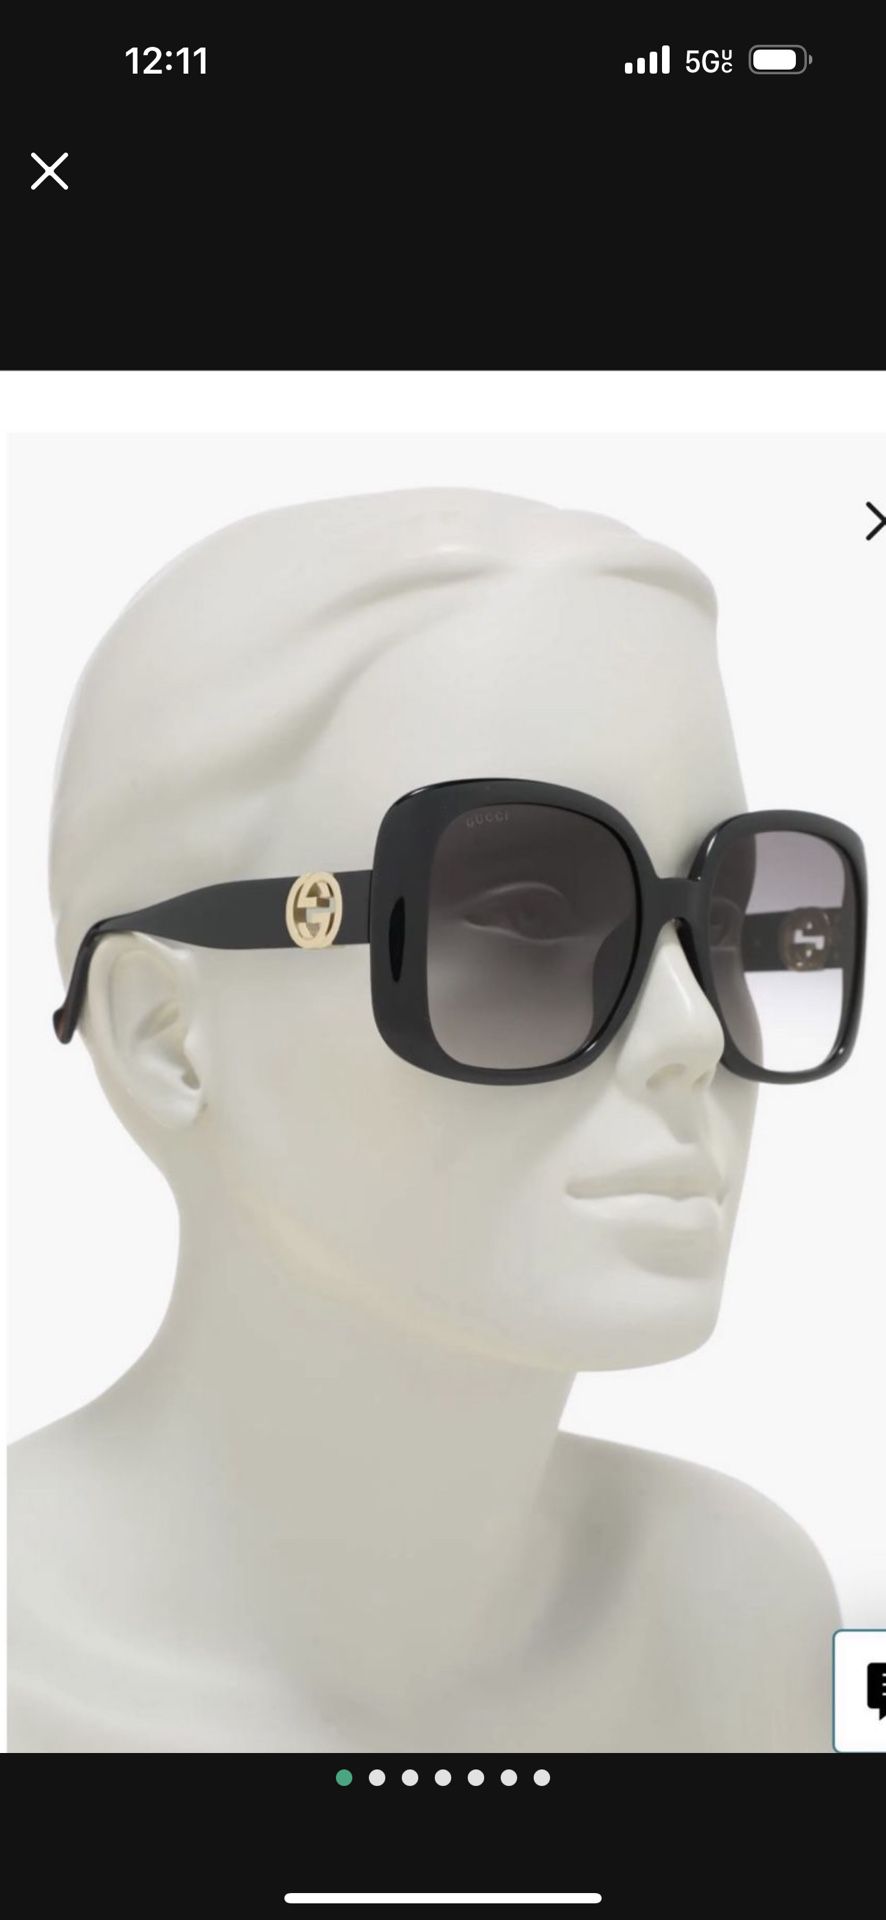 Women’s Gucci Sunglasses 